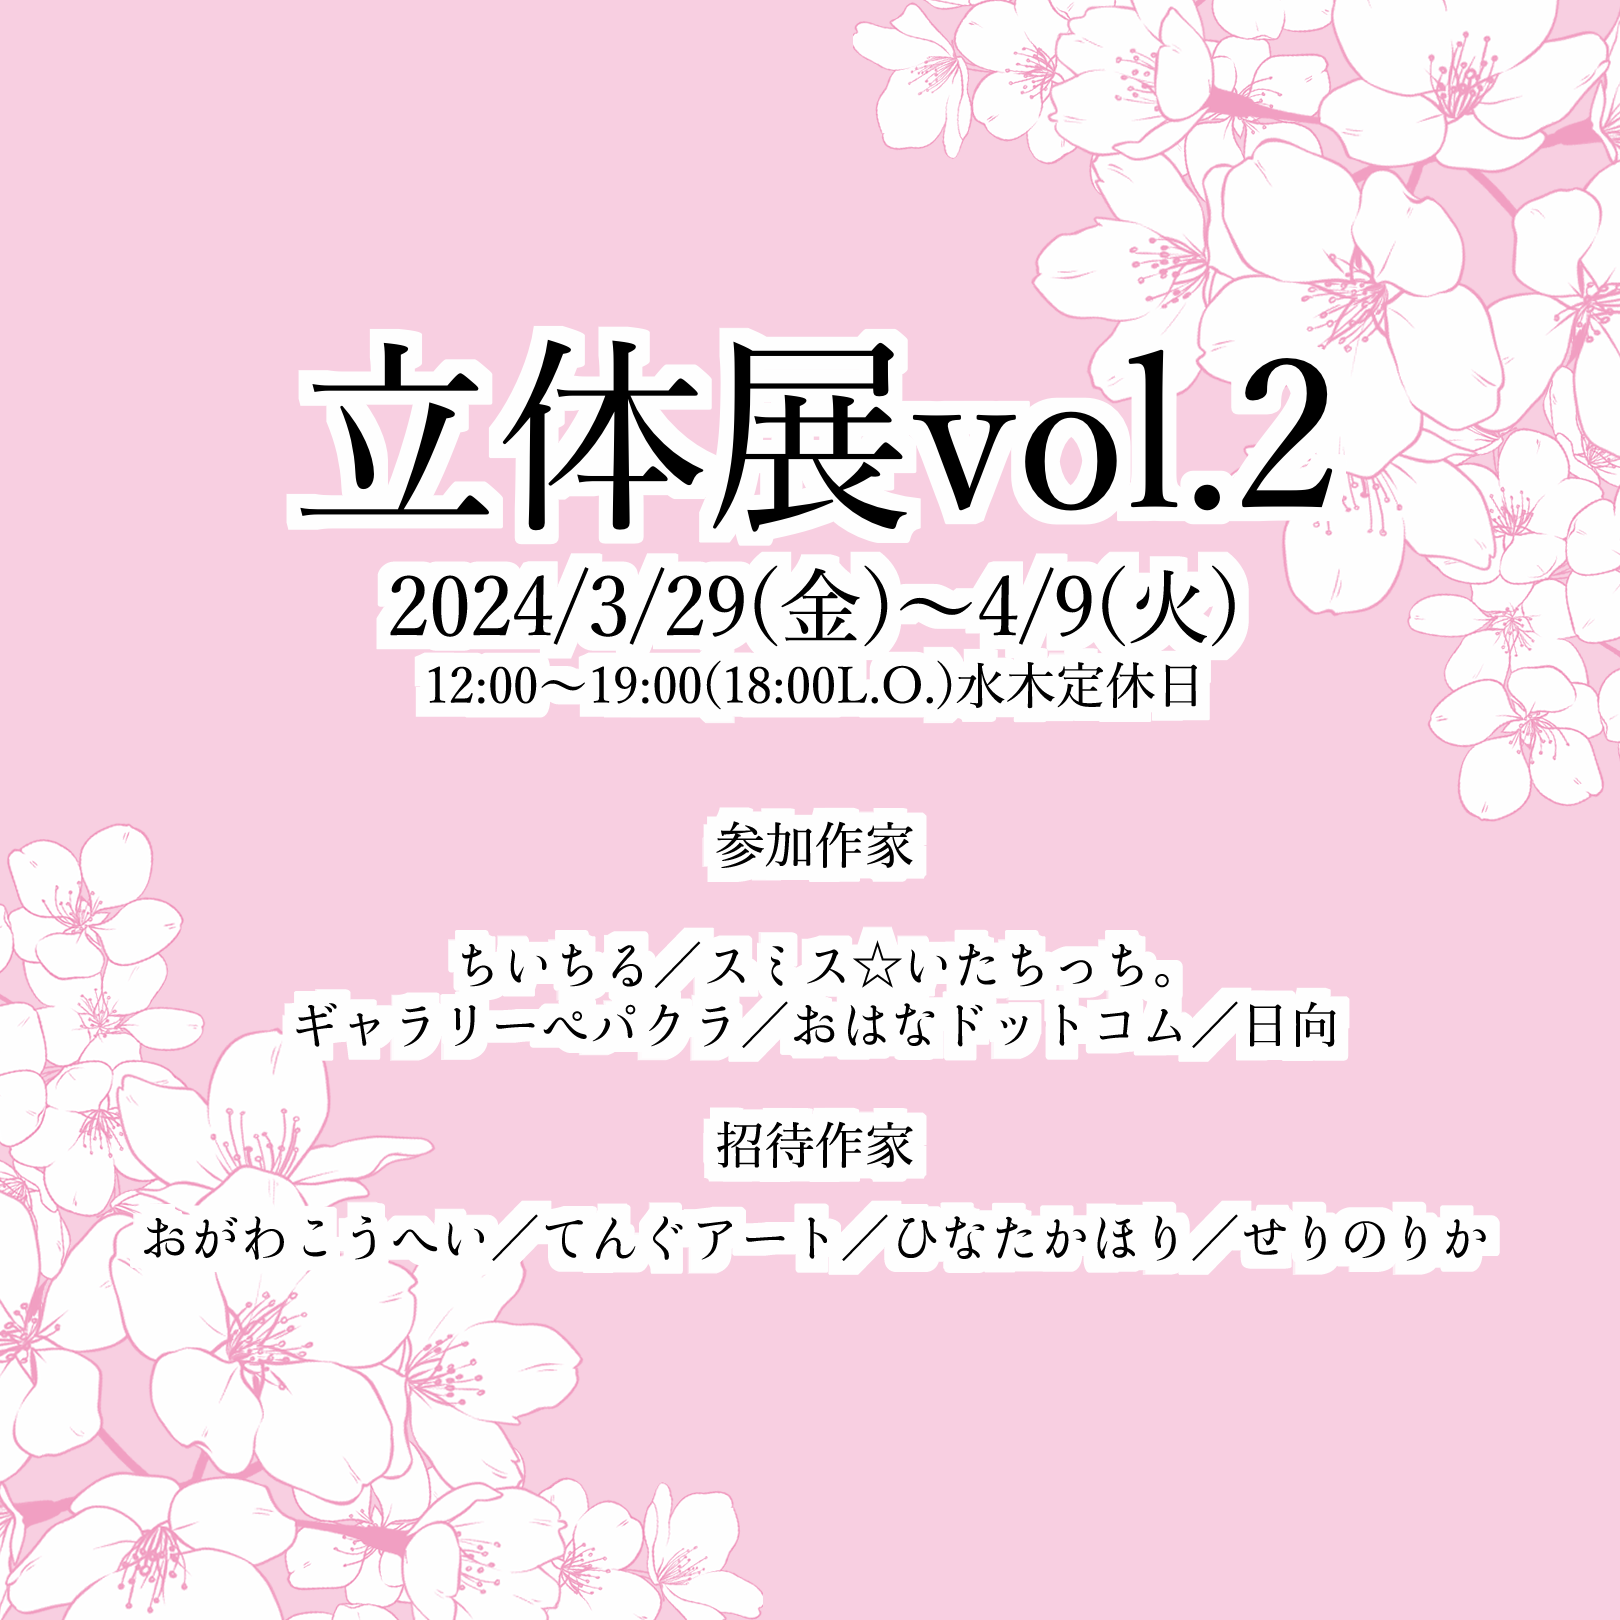 2024年3月29日(金)〜4月9日(火)「立体展vol.2」